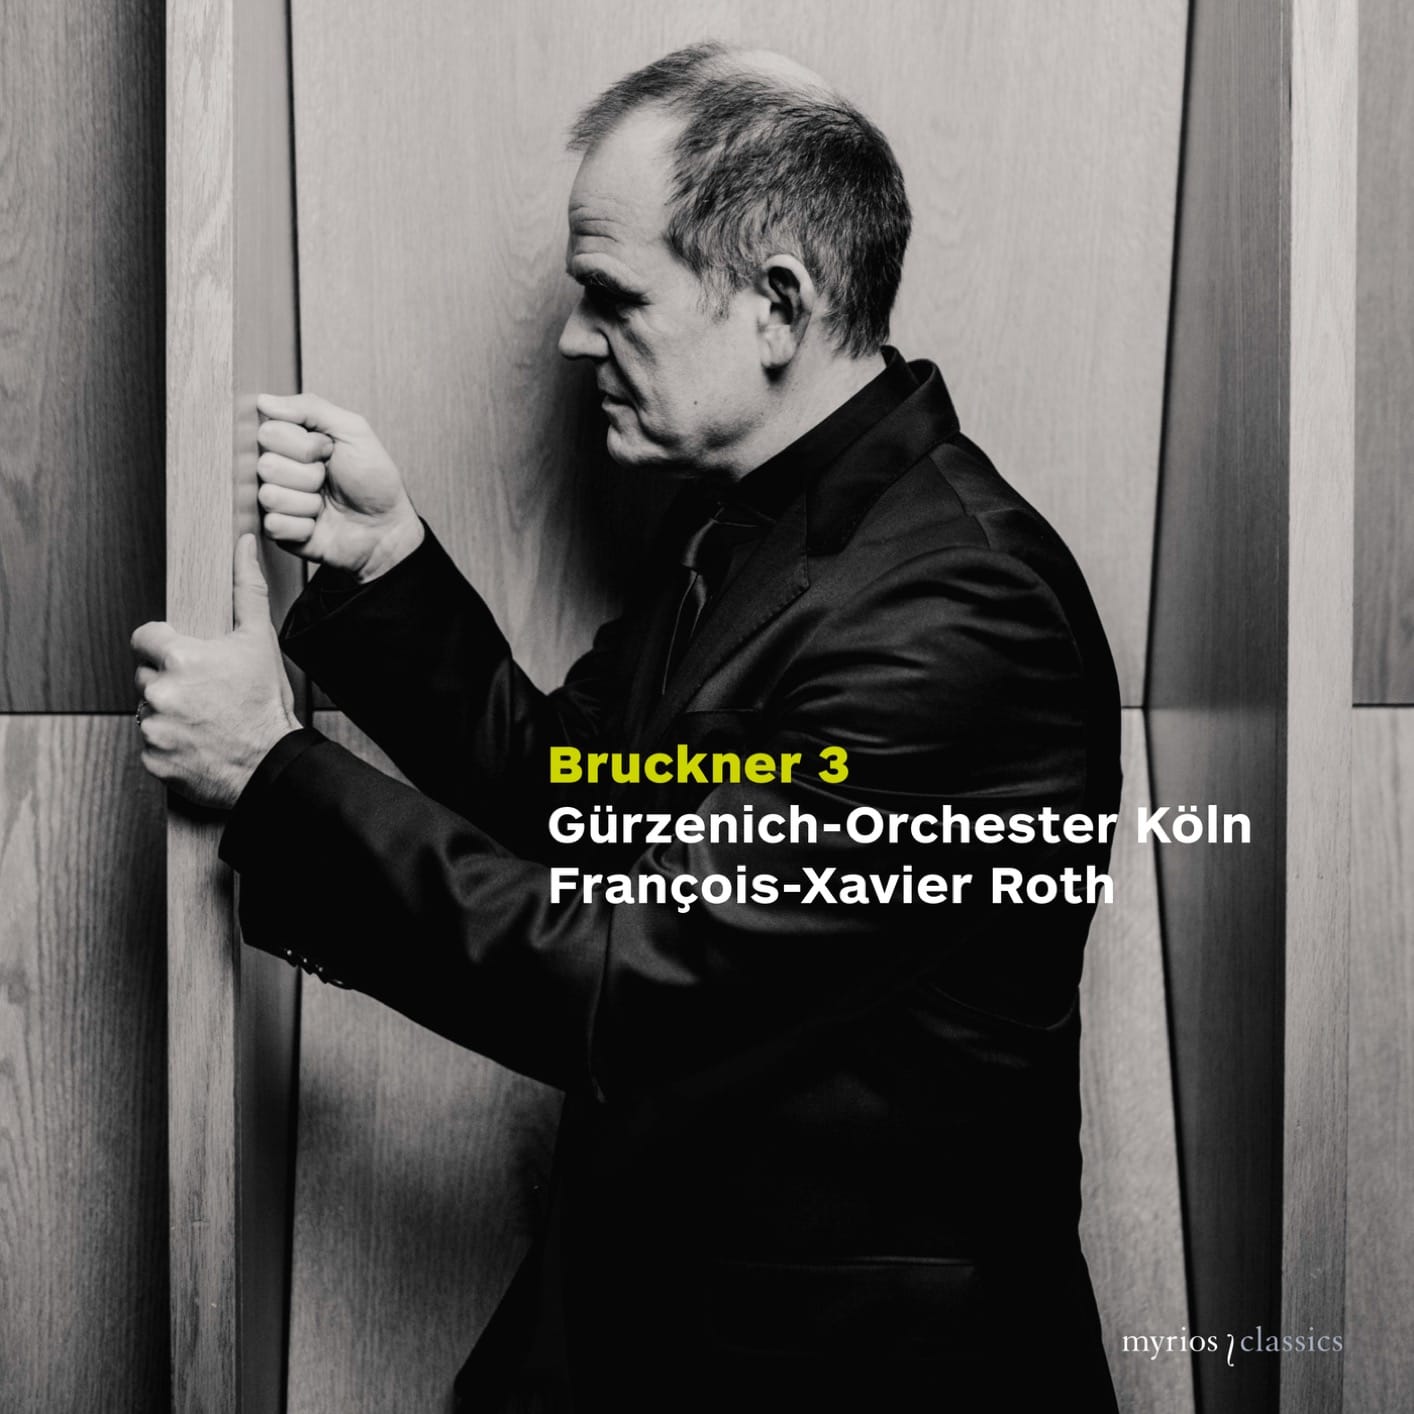 Bruckner Third Symphony from François-Xavier Roth